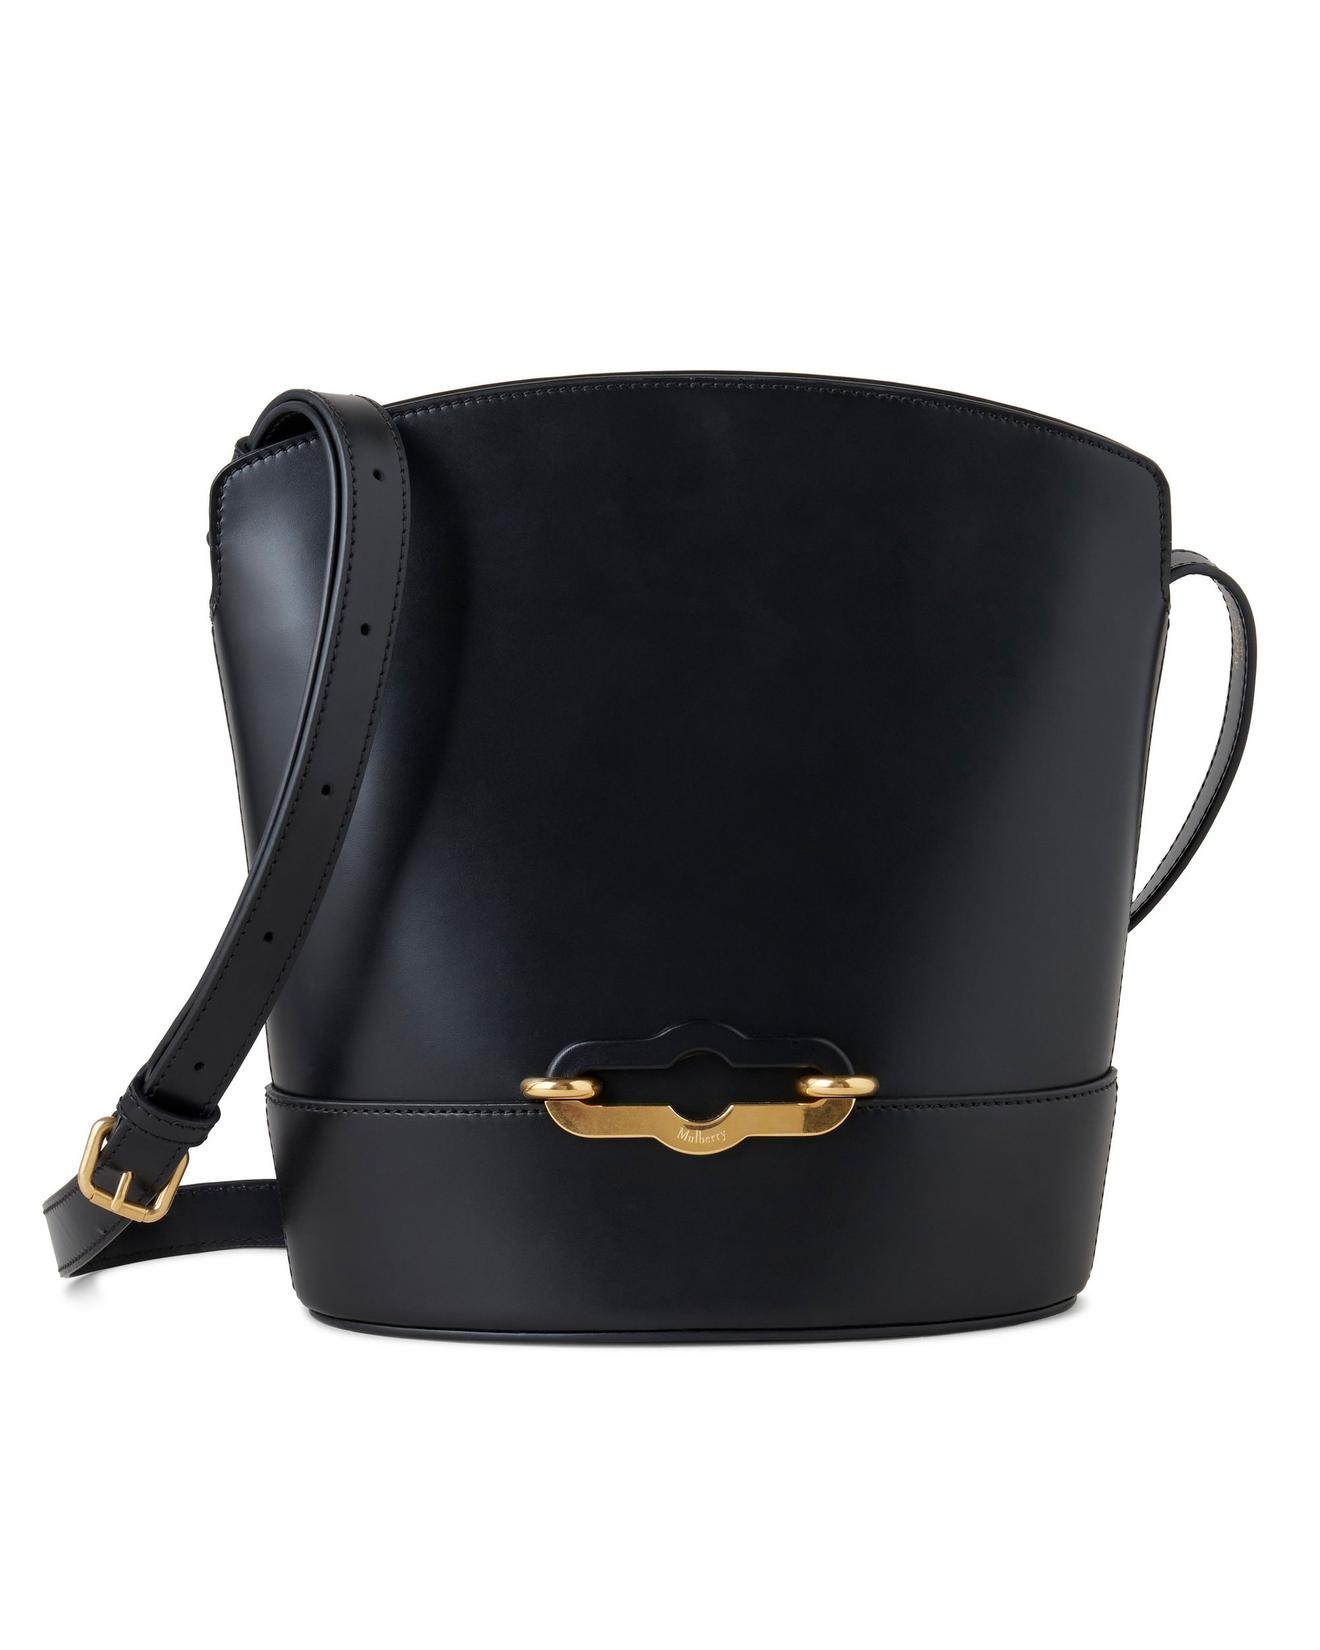 Pimlico bucket black super lux calf för 14245 kr på Nordiska Kompaniet